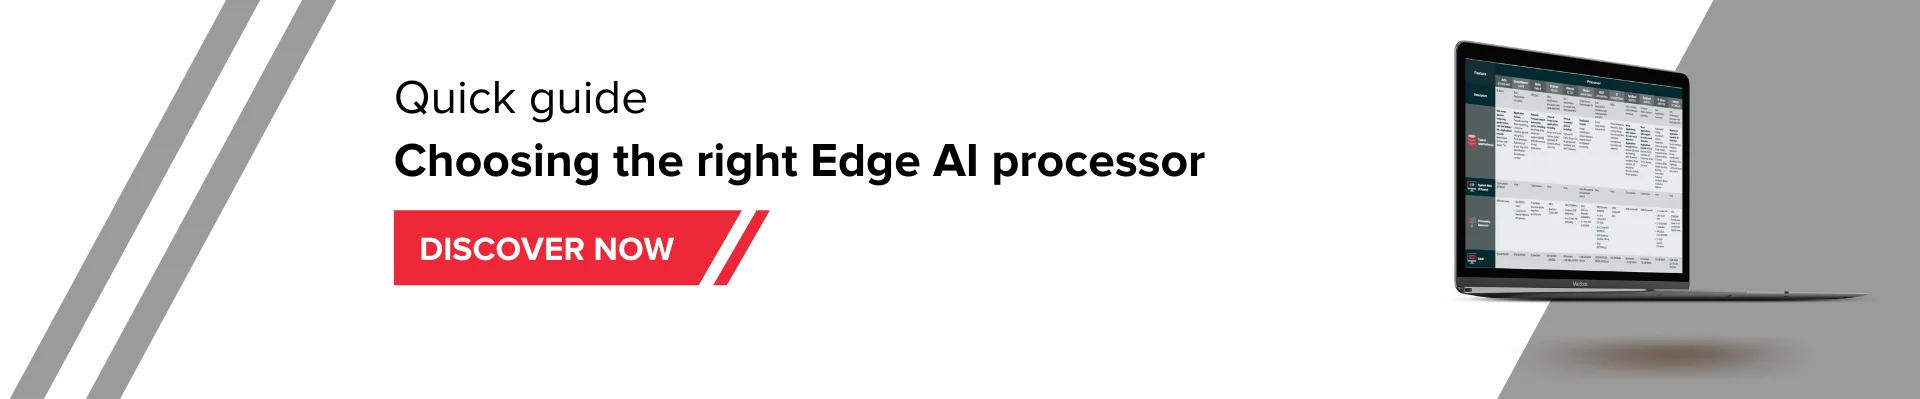 Chooising the right edge AI processor - quick guide